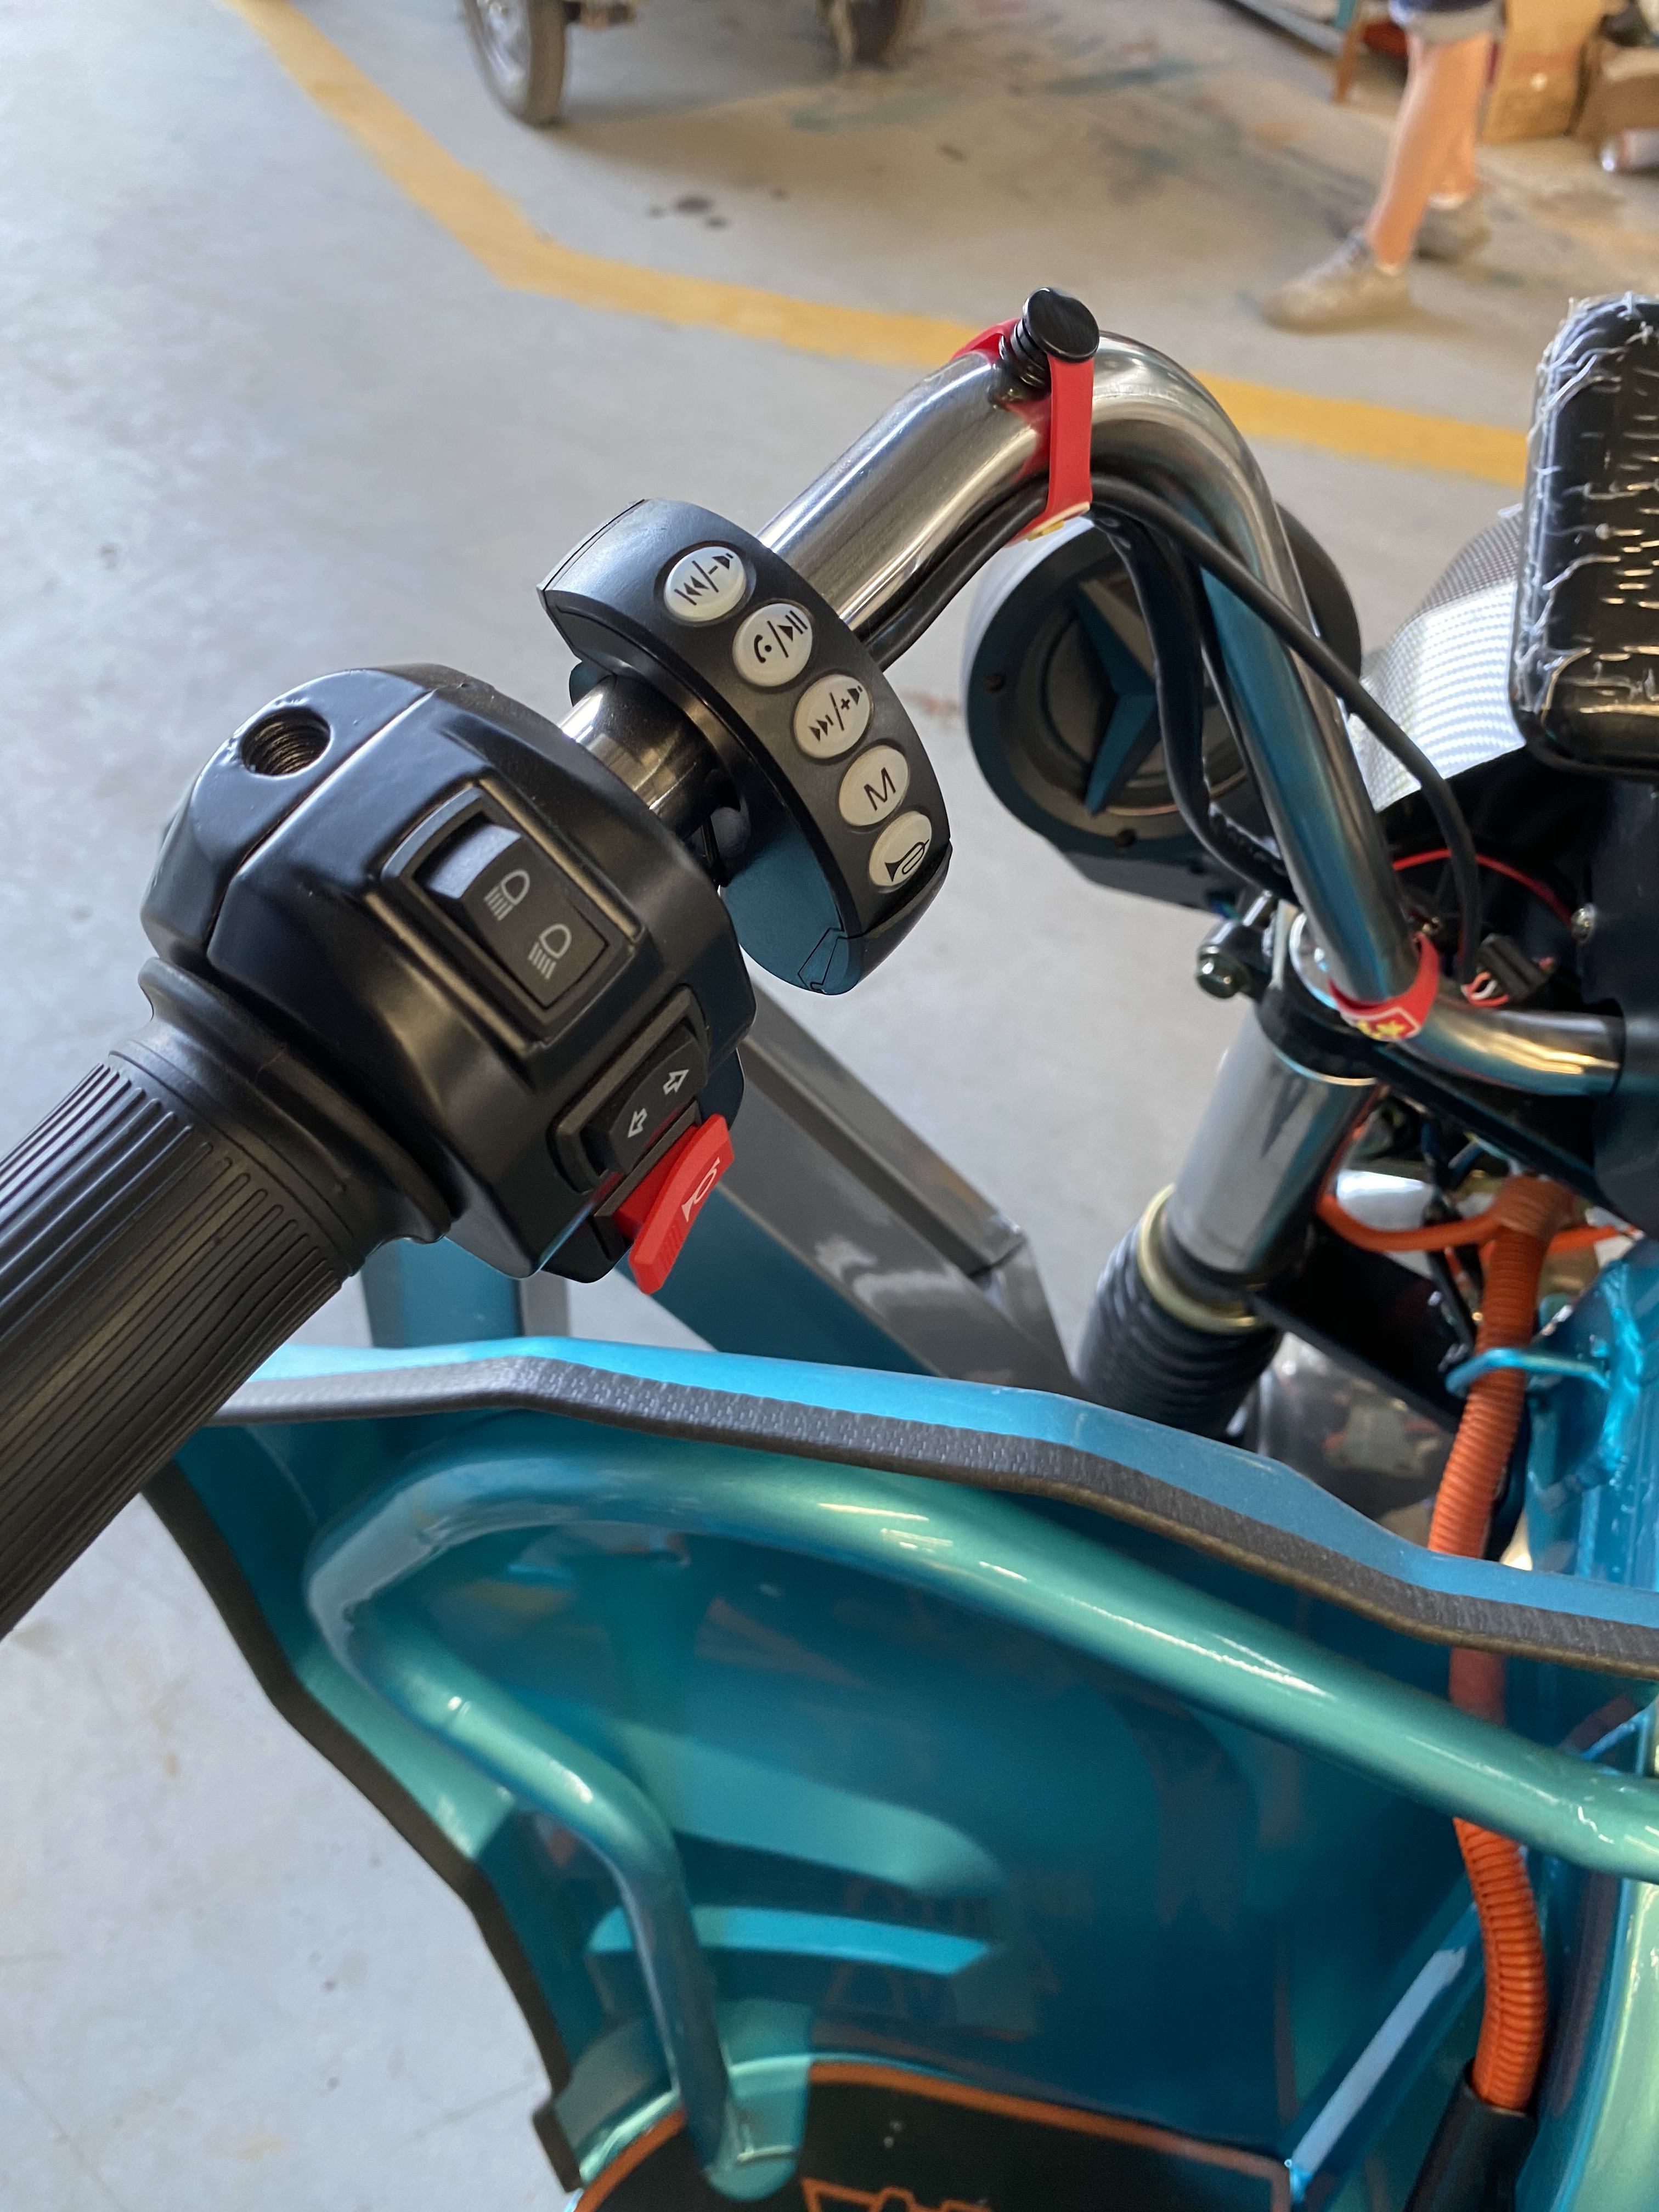 شراء يستخدم المزارع الكهربائي دراجة ثلاثية العجلات للمركبات الزراعية ذات العجلات الثلاث في الريف ,يستخدم المزارع الكهربائي دراجة ثلاثية العجلات للمركبات الزراعية ذات العجلات الثلاث في الريف الأسعار ·يستخدم المزارع الكهربائي دراجة ثلاثية العجلات للمركبات الزراعية ذات العجلات الثلاث في الريف العلامات التجارية ,يستخدم المزارع الكهربائي دراجة ثلاثية العجلات للمركبات الزراعية ذات العجلات الثلاث في الريف الصانع ,يستخدم المزارع الكهربائي دراجة ثلاثية العجلات للمركبات الزراعية ذات العجلات الثلاث في الريف اقتباس ·يستخدم المزارع الكهربائي دراجة ثلاثية العجلات للمركبات الزراعية ذات العجلات الثلاث في الريف الشركة